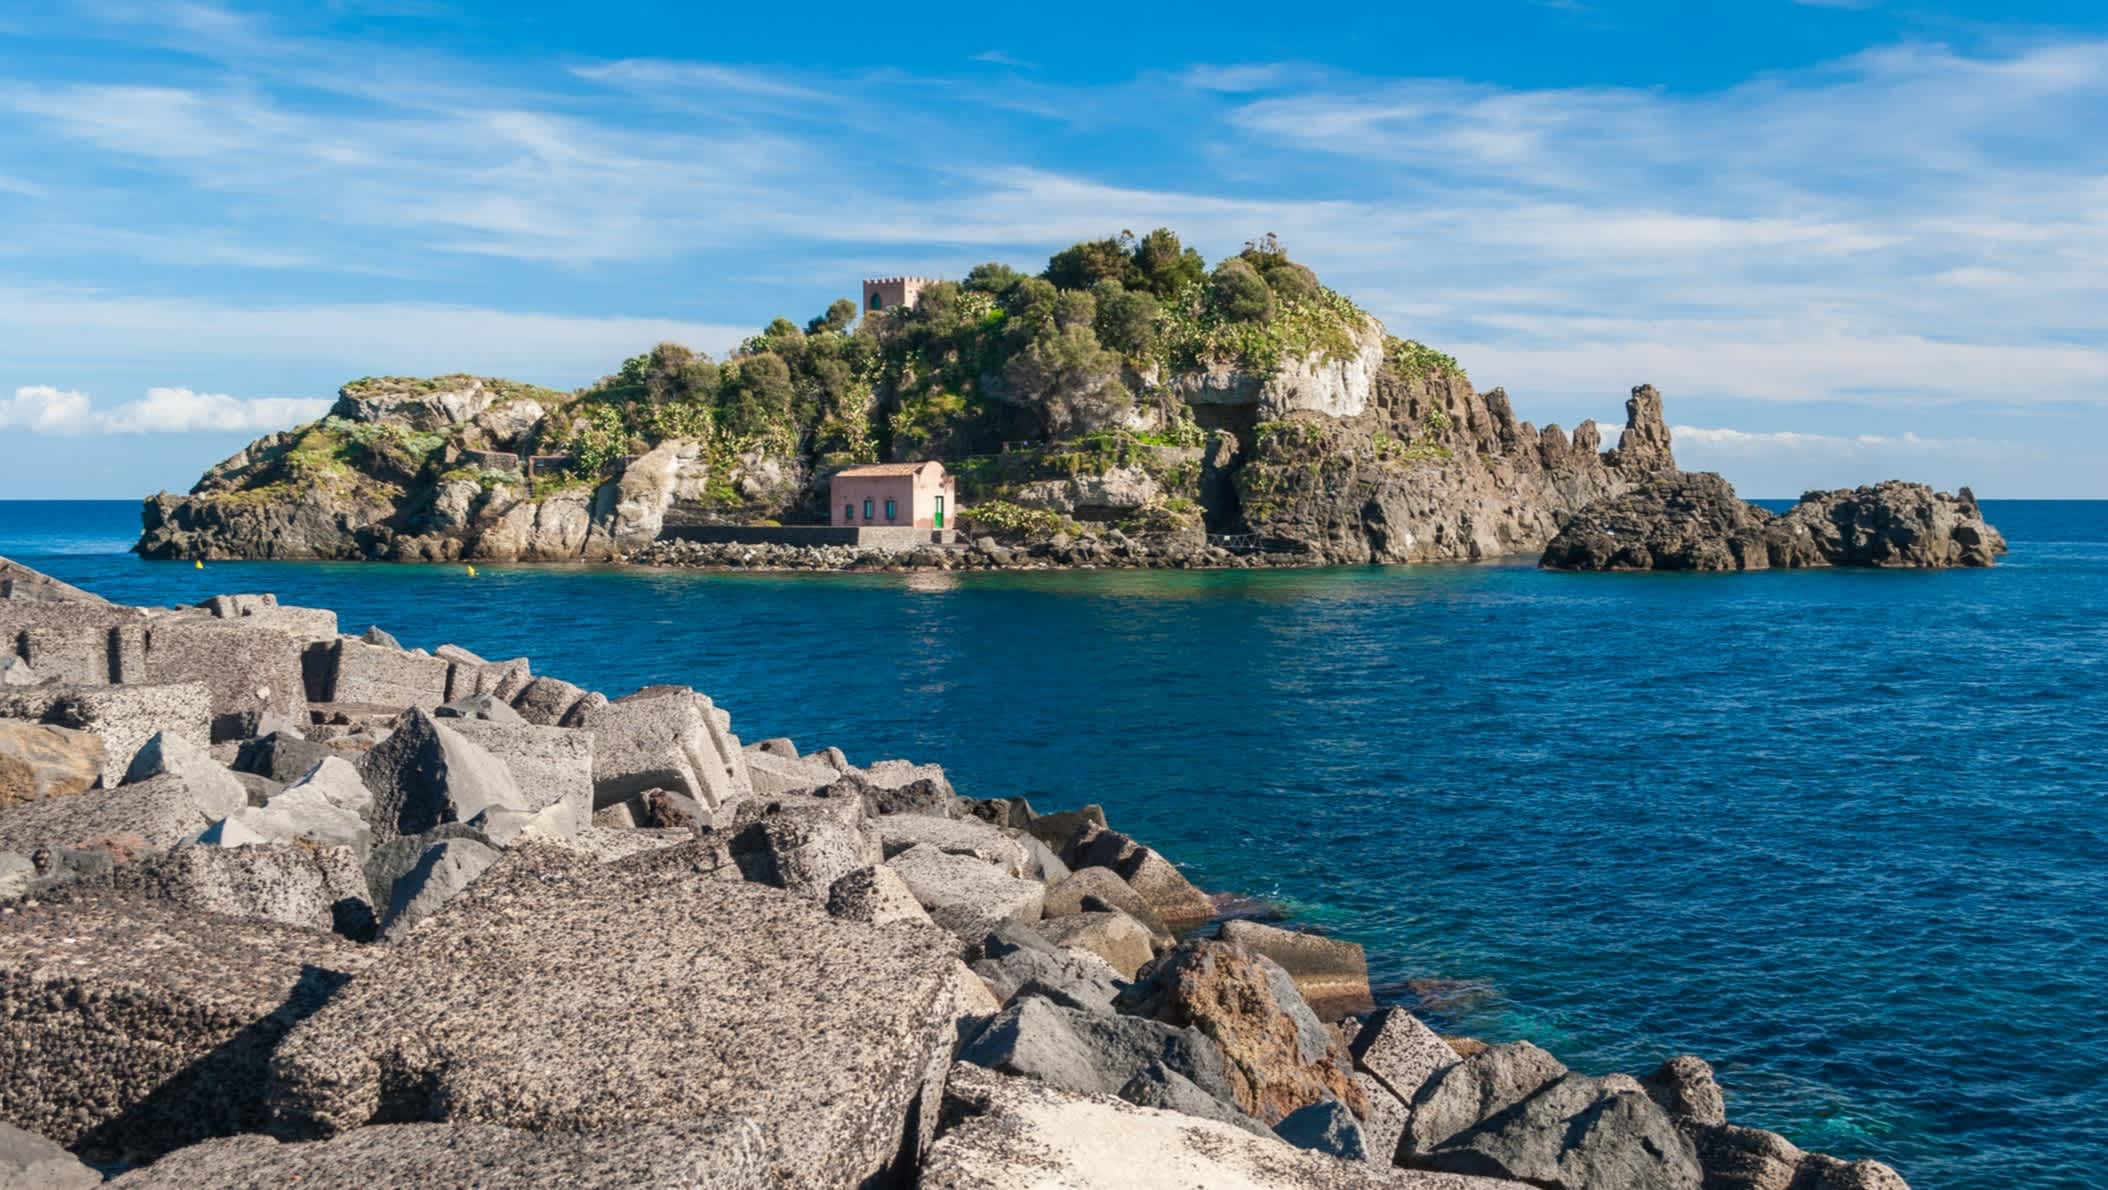 Die Insel Lachea in der " Riviera dei Ciclopi", Sizilien, Italien. 

